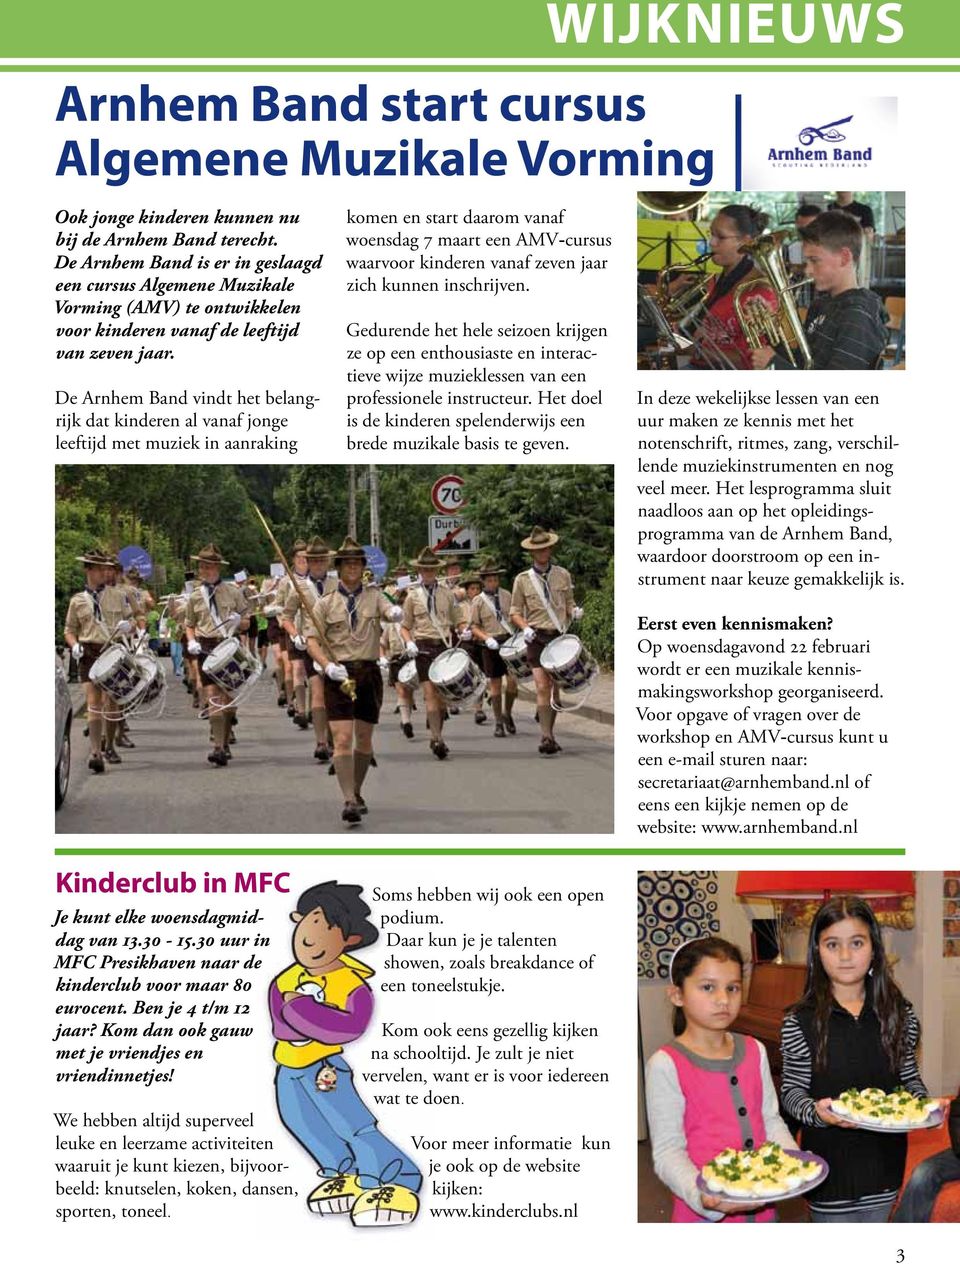 De Arnhem Band vindt het belangrijk dat kinderen al vanaf jonge leeftijd met muziek in aanraking komen en start daarom vanaf woensdag 7 maart een AMV-cursus waarvoor kinderen vanaf zeven jaar zich